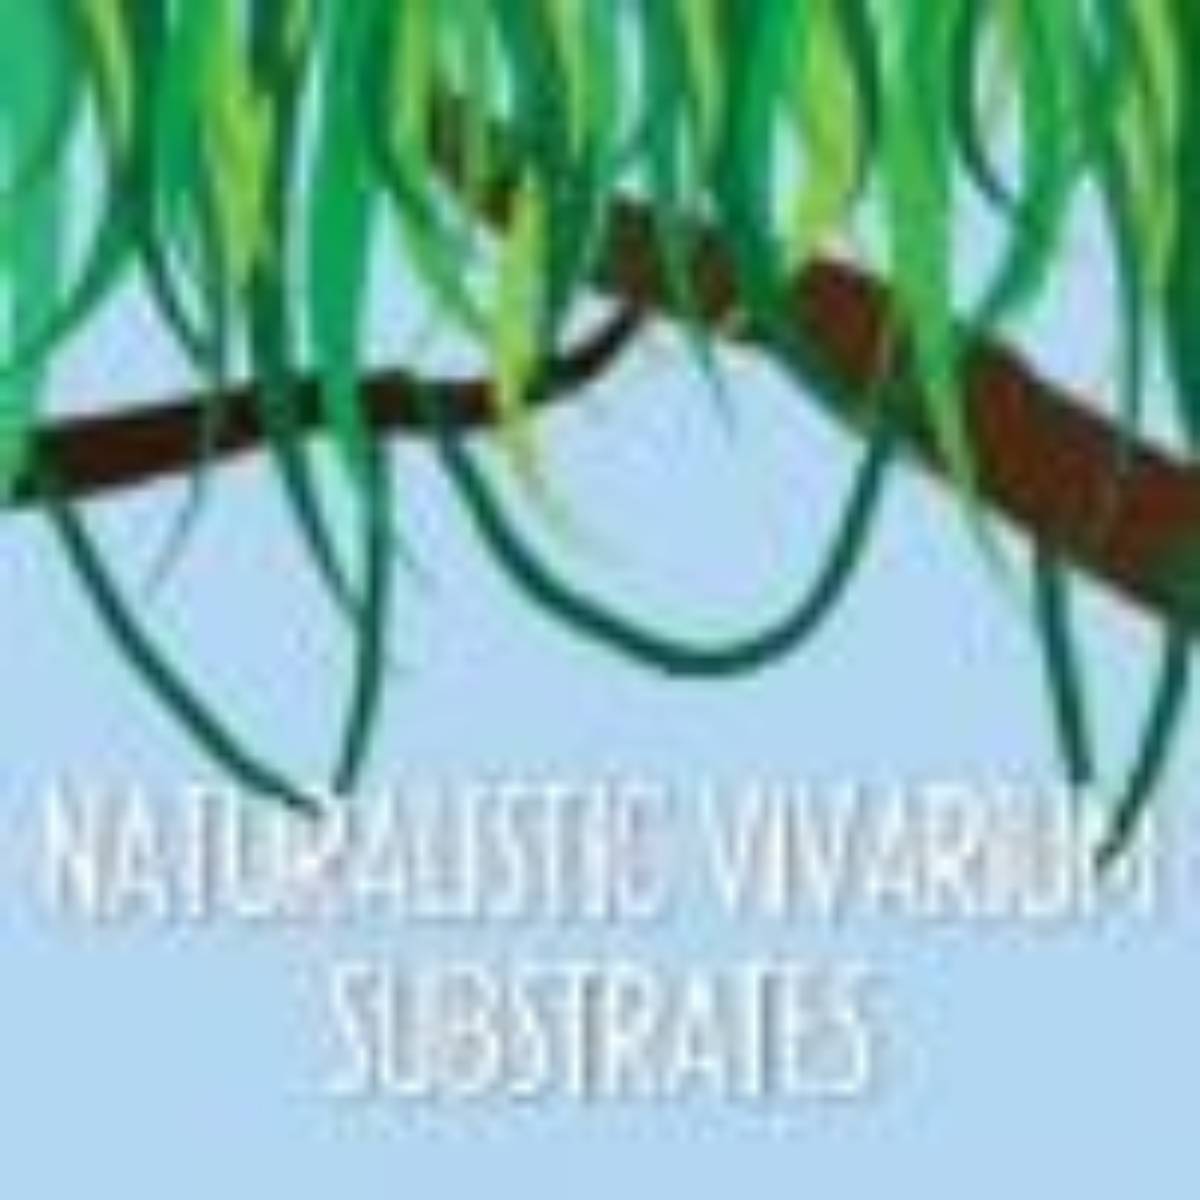 Naturalistic Vivarium Substrates at Josh's Frogs